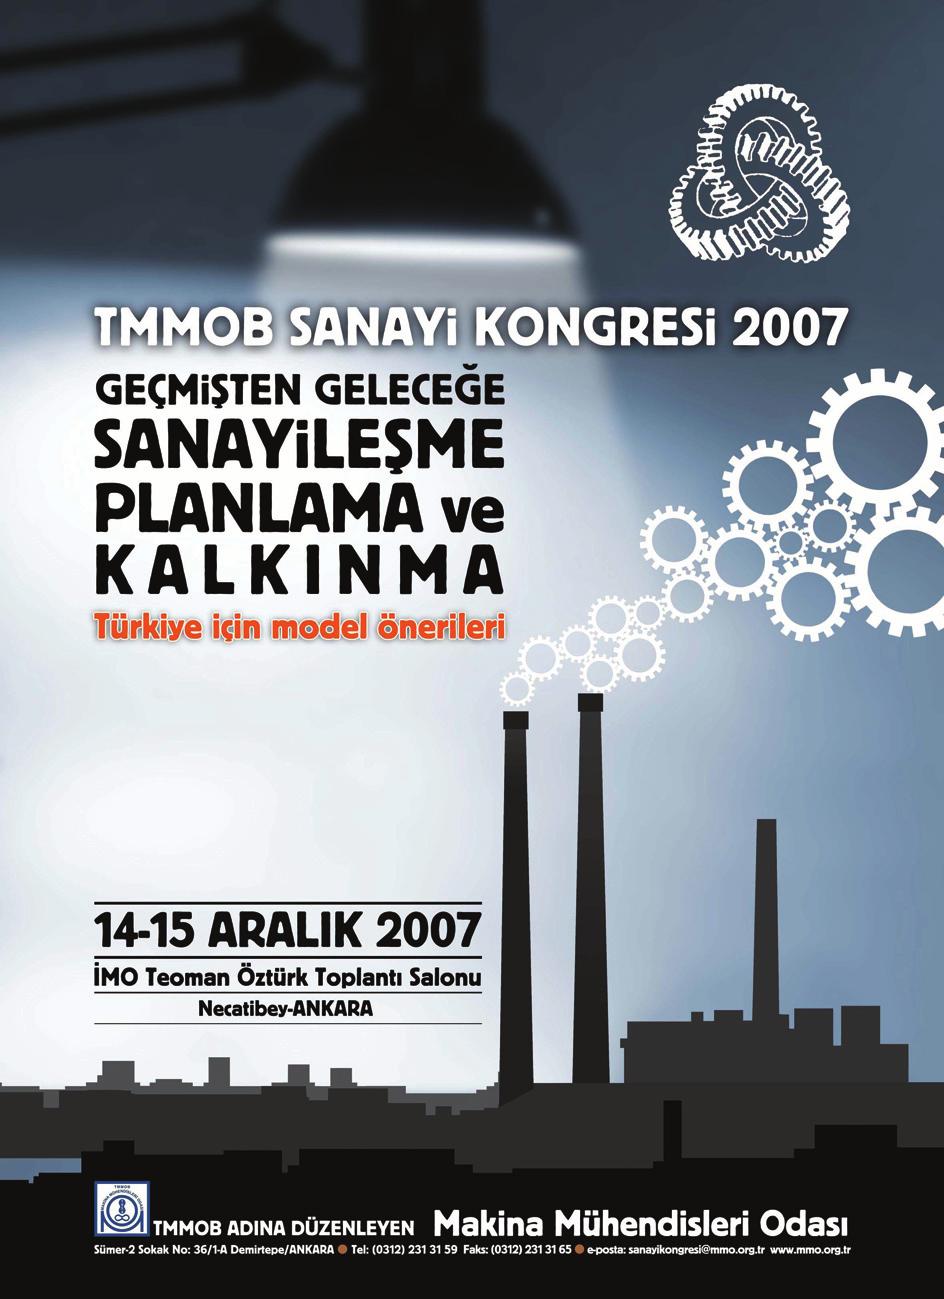 TMMOB adına Makina Mühendisleri Odası sekretaryalığında düzenlenen TMMOB Sanayi Kongrelerinin on altıncısı Geçmişten Geleceğe Sanayileşme Planlama ve Kalkınma, Türkiye İçin Model Önerileri temasıyla